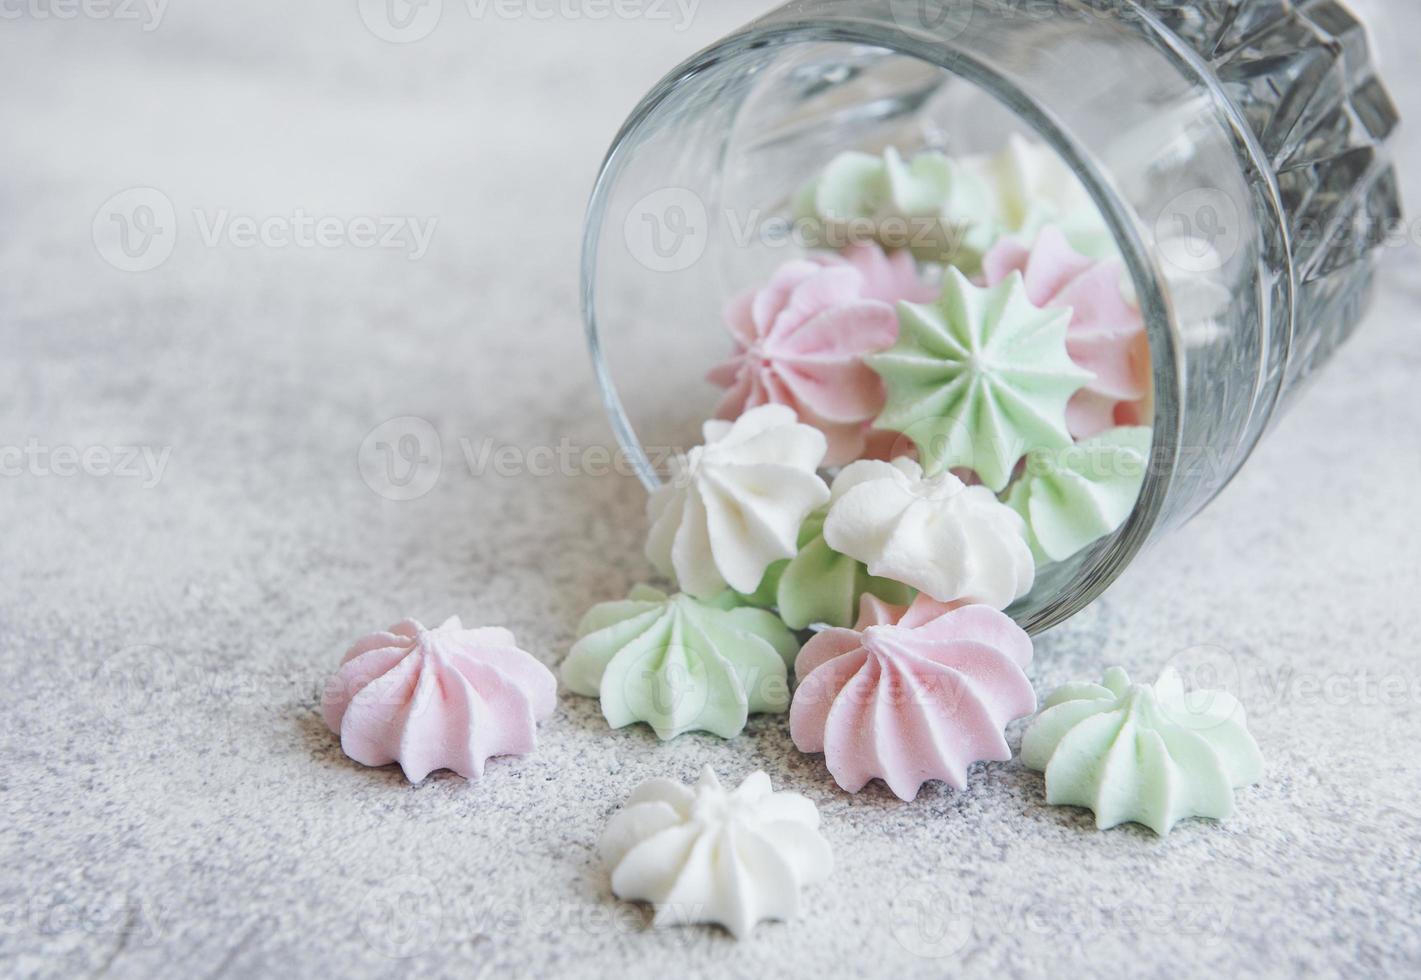 pequenos merengues brancos, rosa e verdes no copo foto